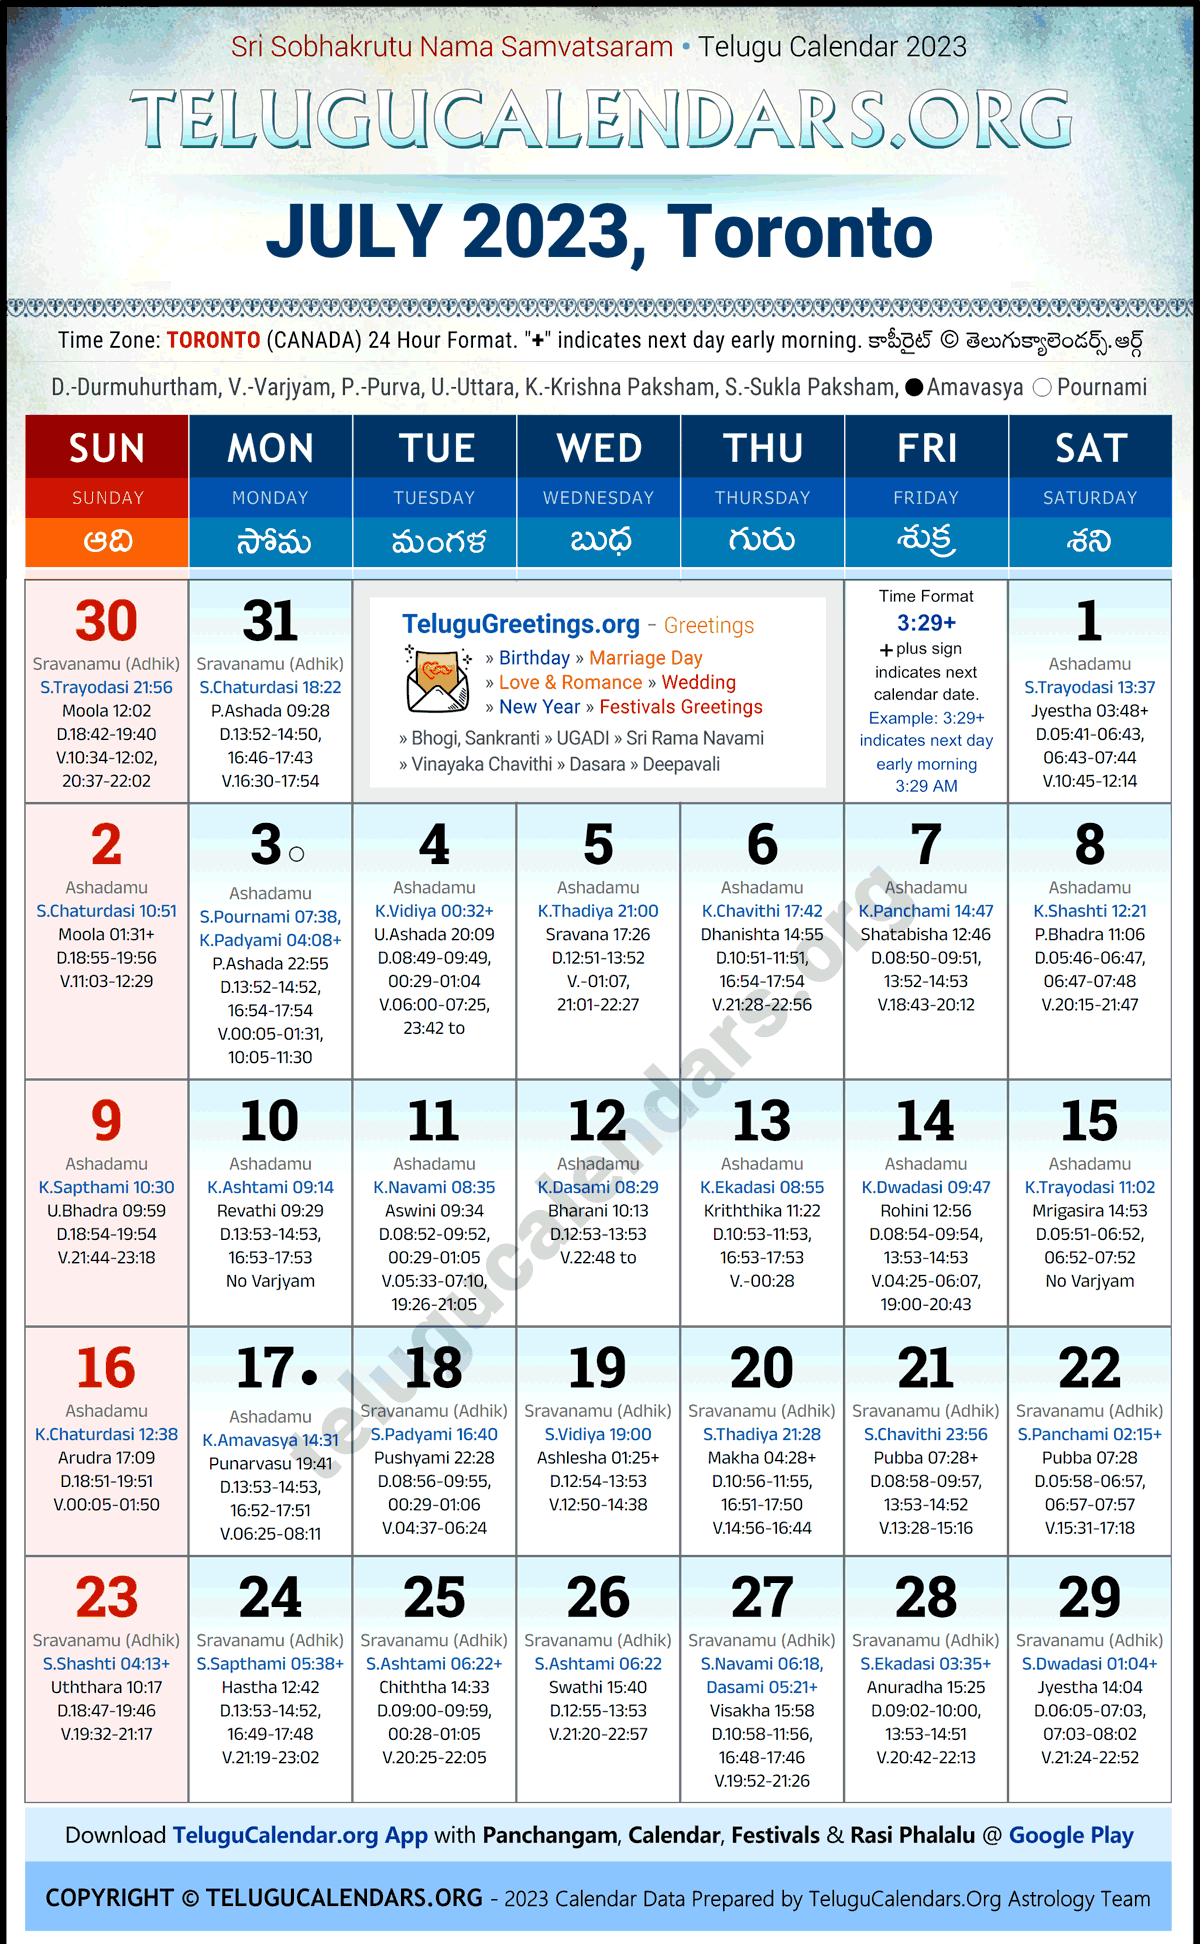 Telugu Calendar 2023 July Festivals for Toronto